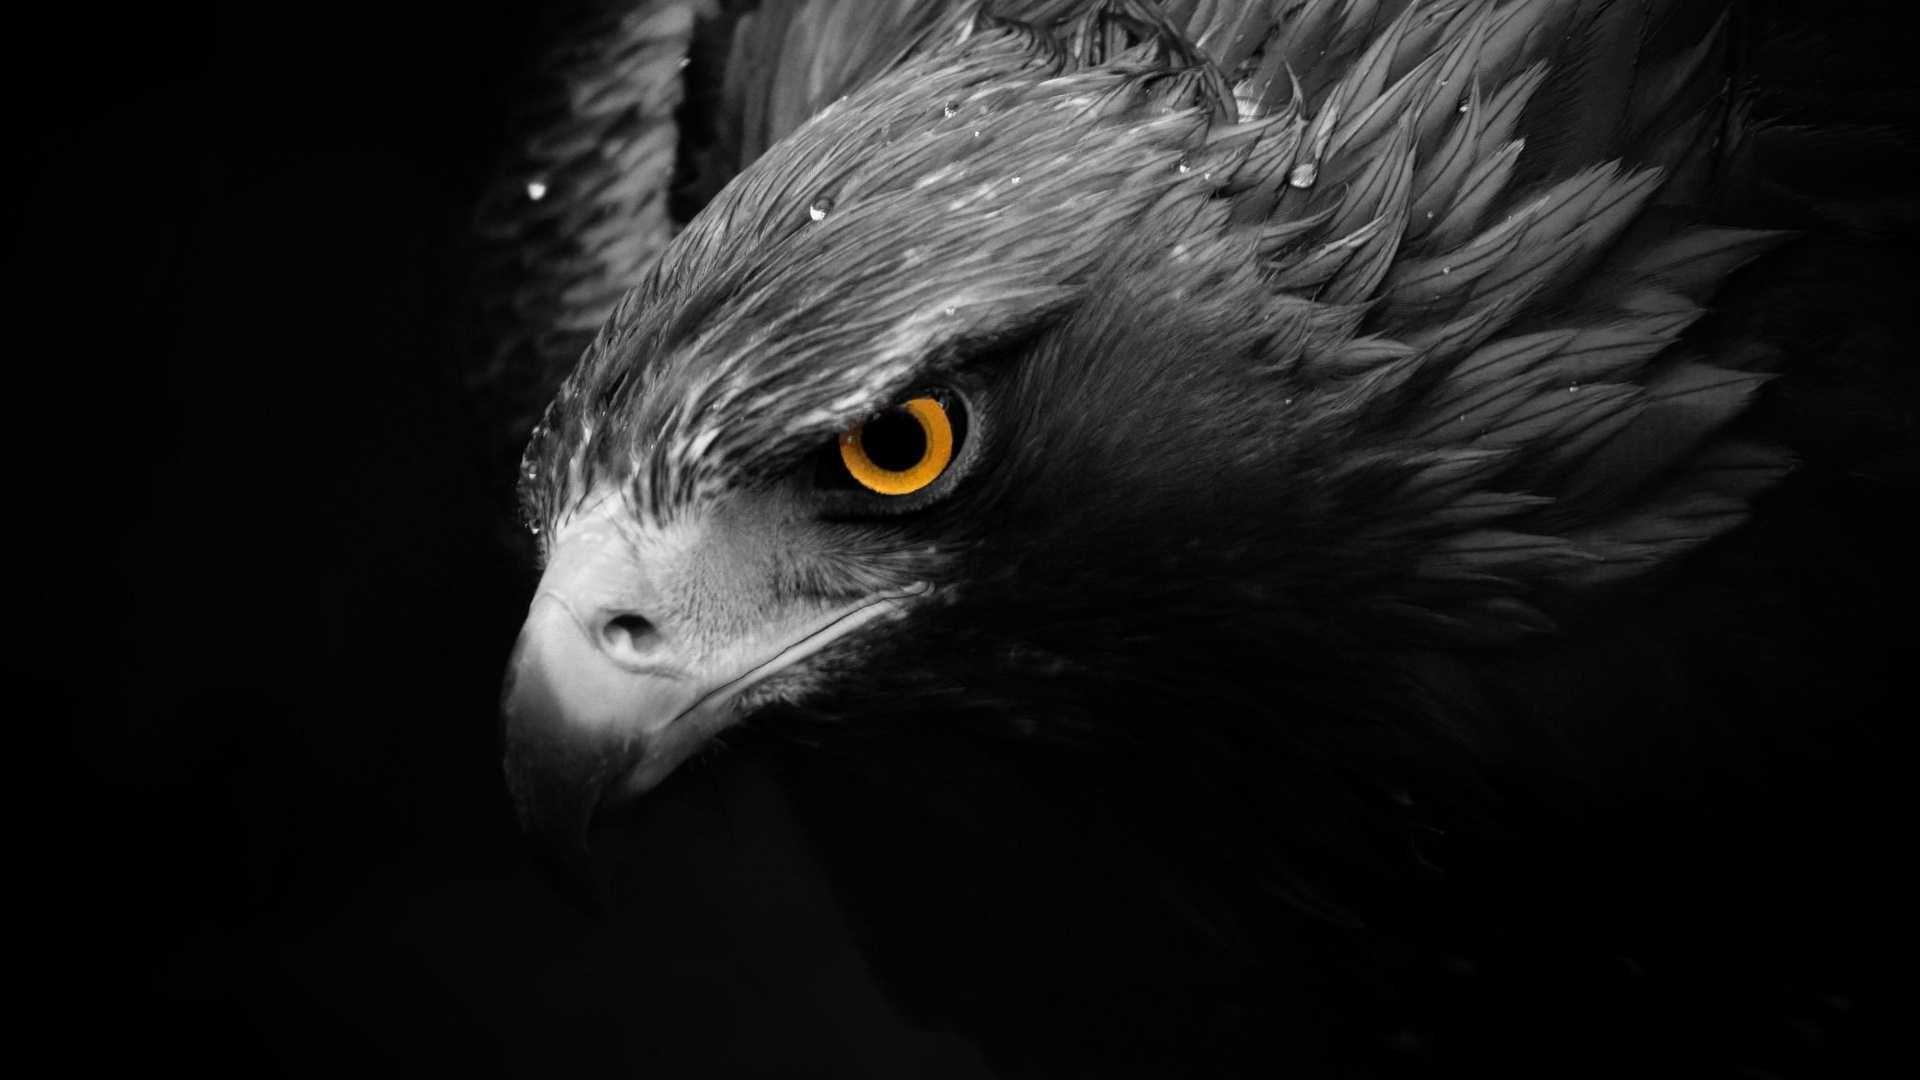 eagle eye